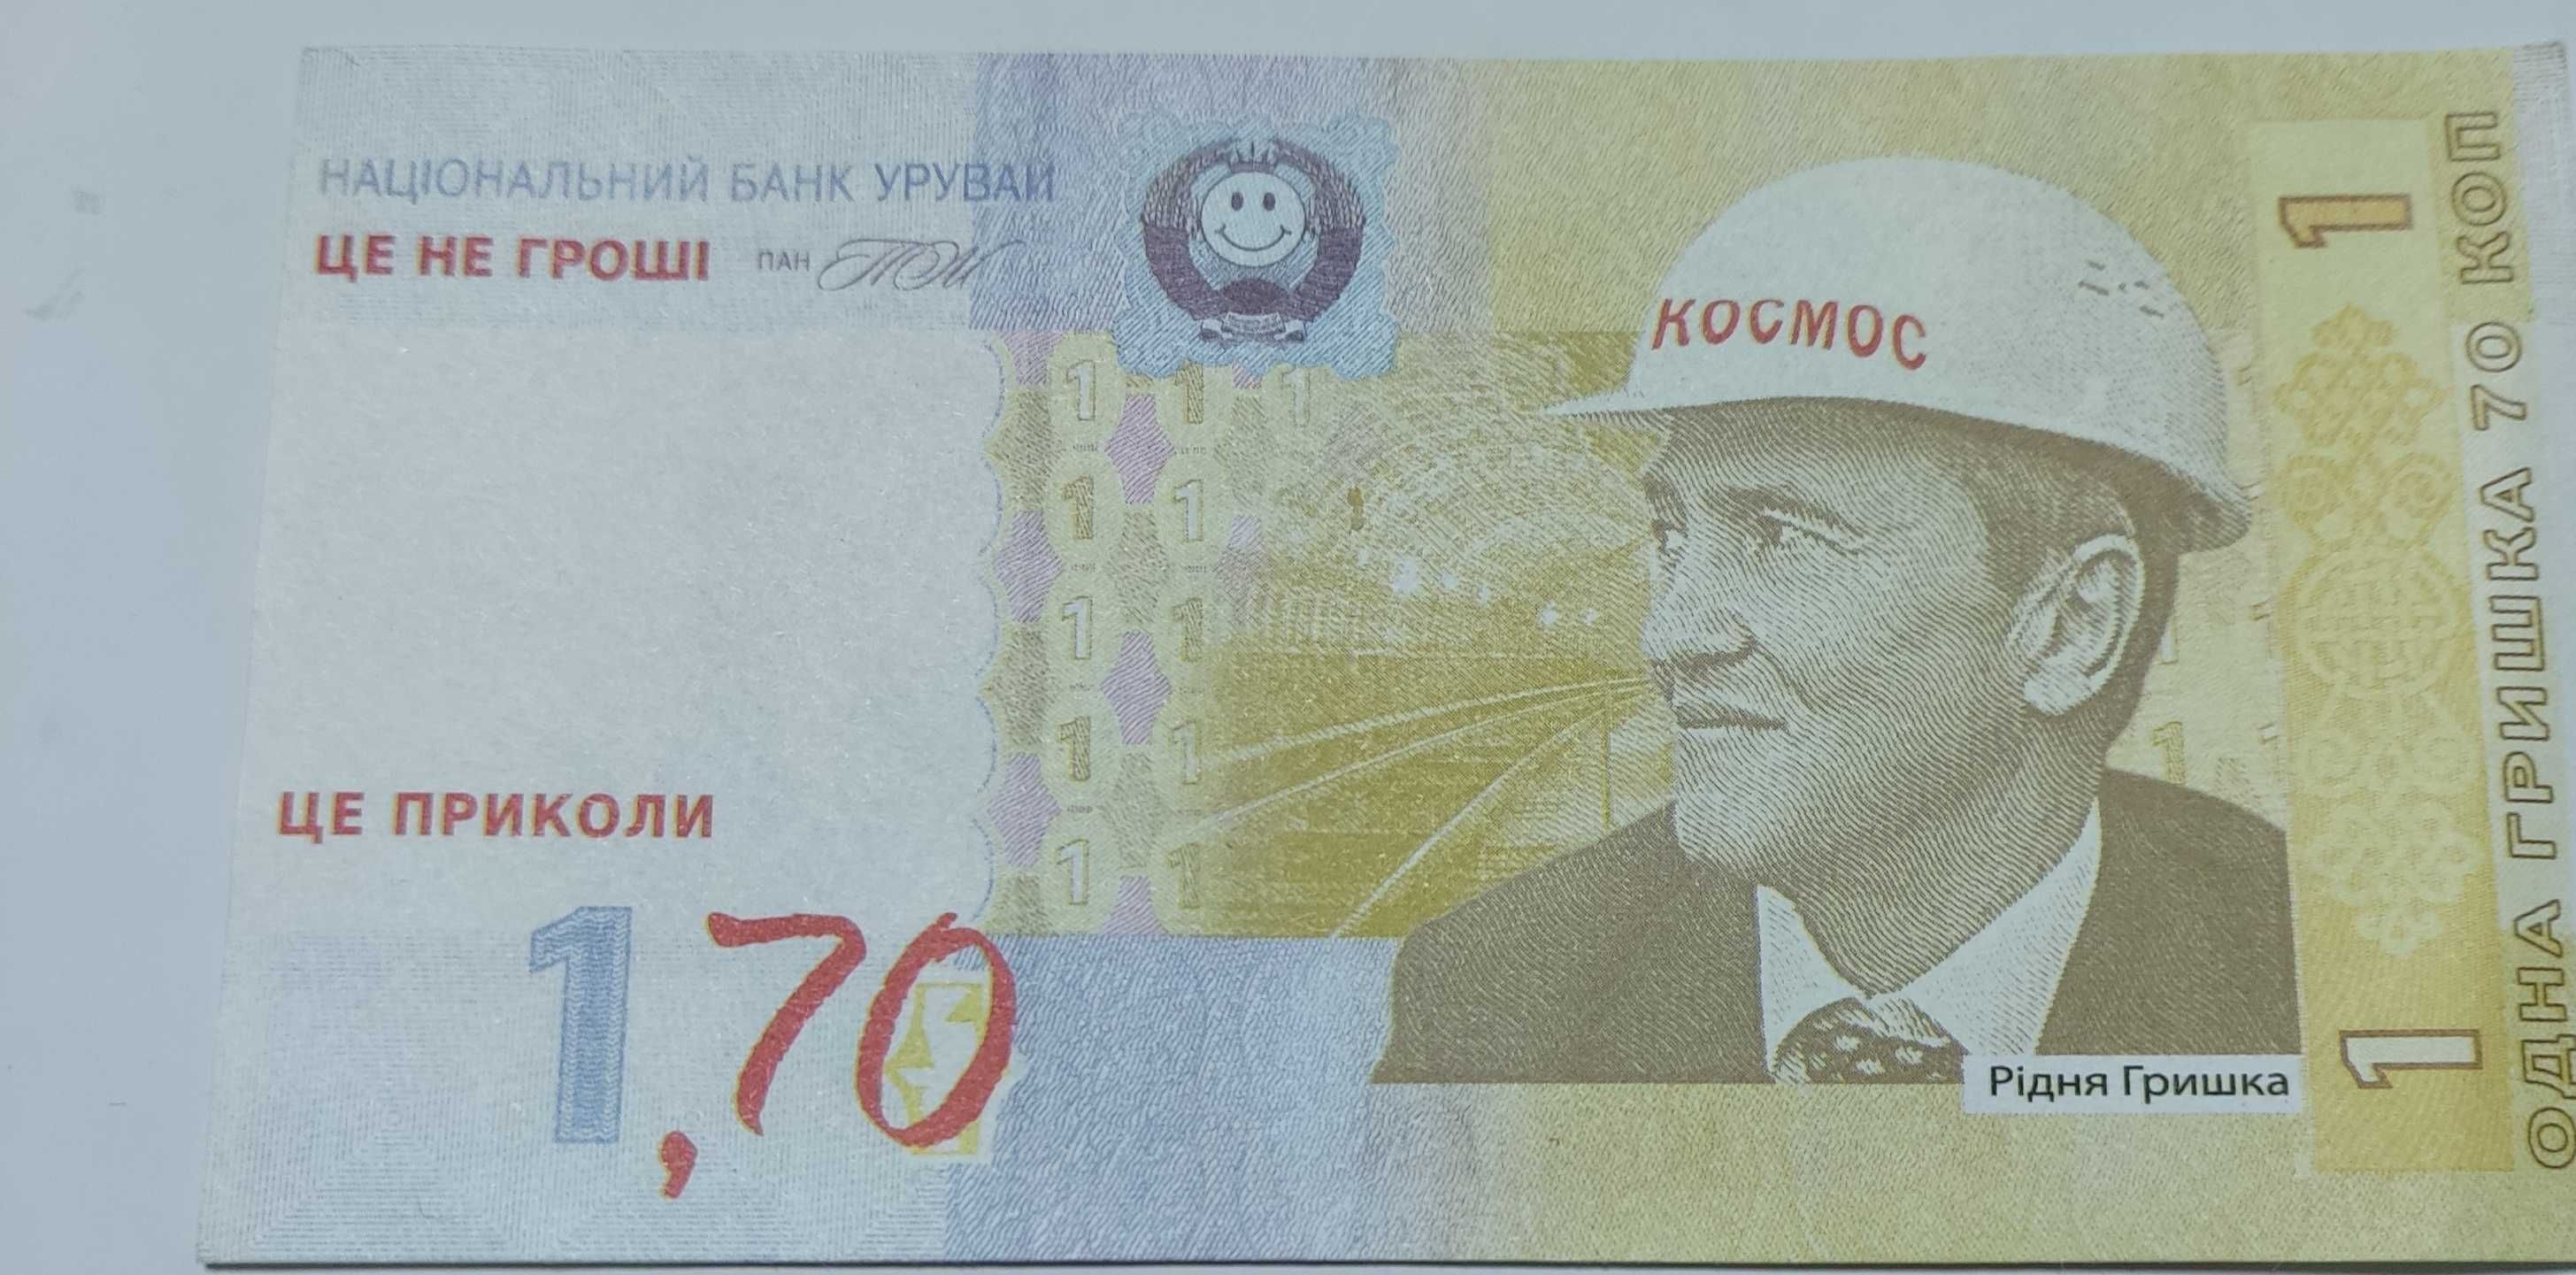 1 гривна 70 копеек Черновецкий в каске Космос (прикол).